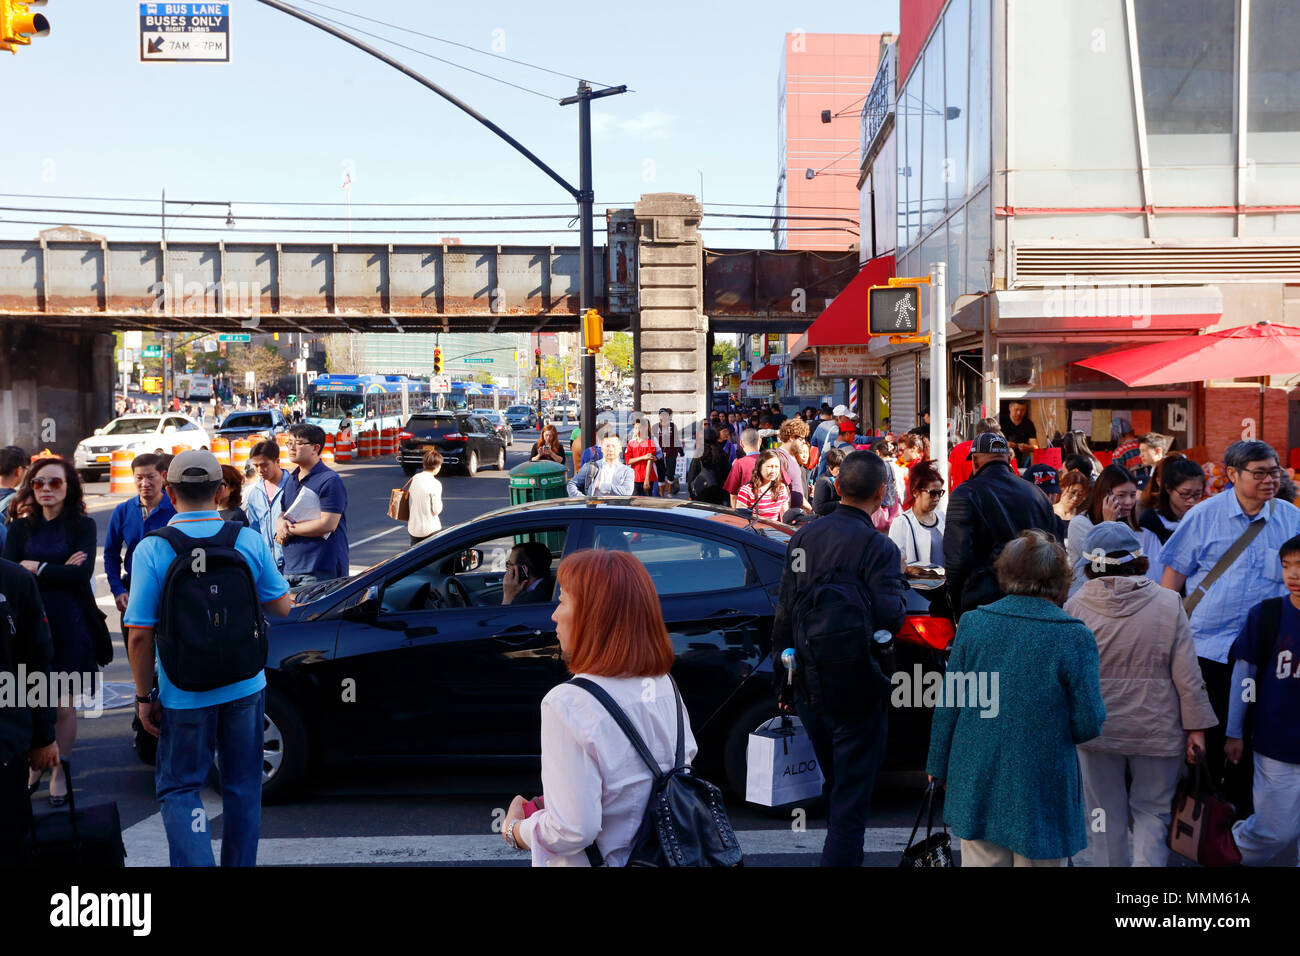 El conductor se sienta en un cruce peatonal inmerso en un celular llamada mientras los peatones pruebe y camine alrededor del vehículo, en el centro de Flushing, Nueva York, NY Foto de stock